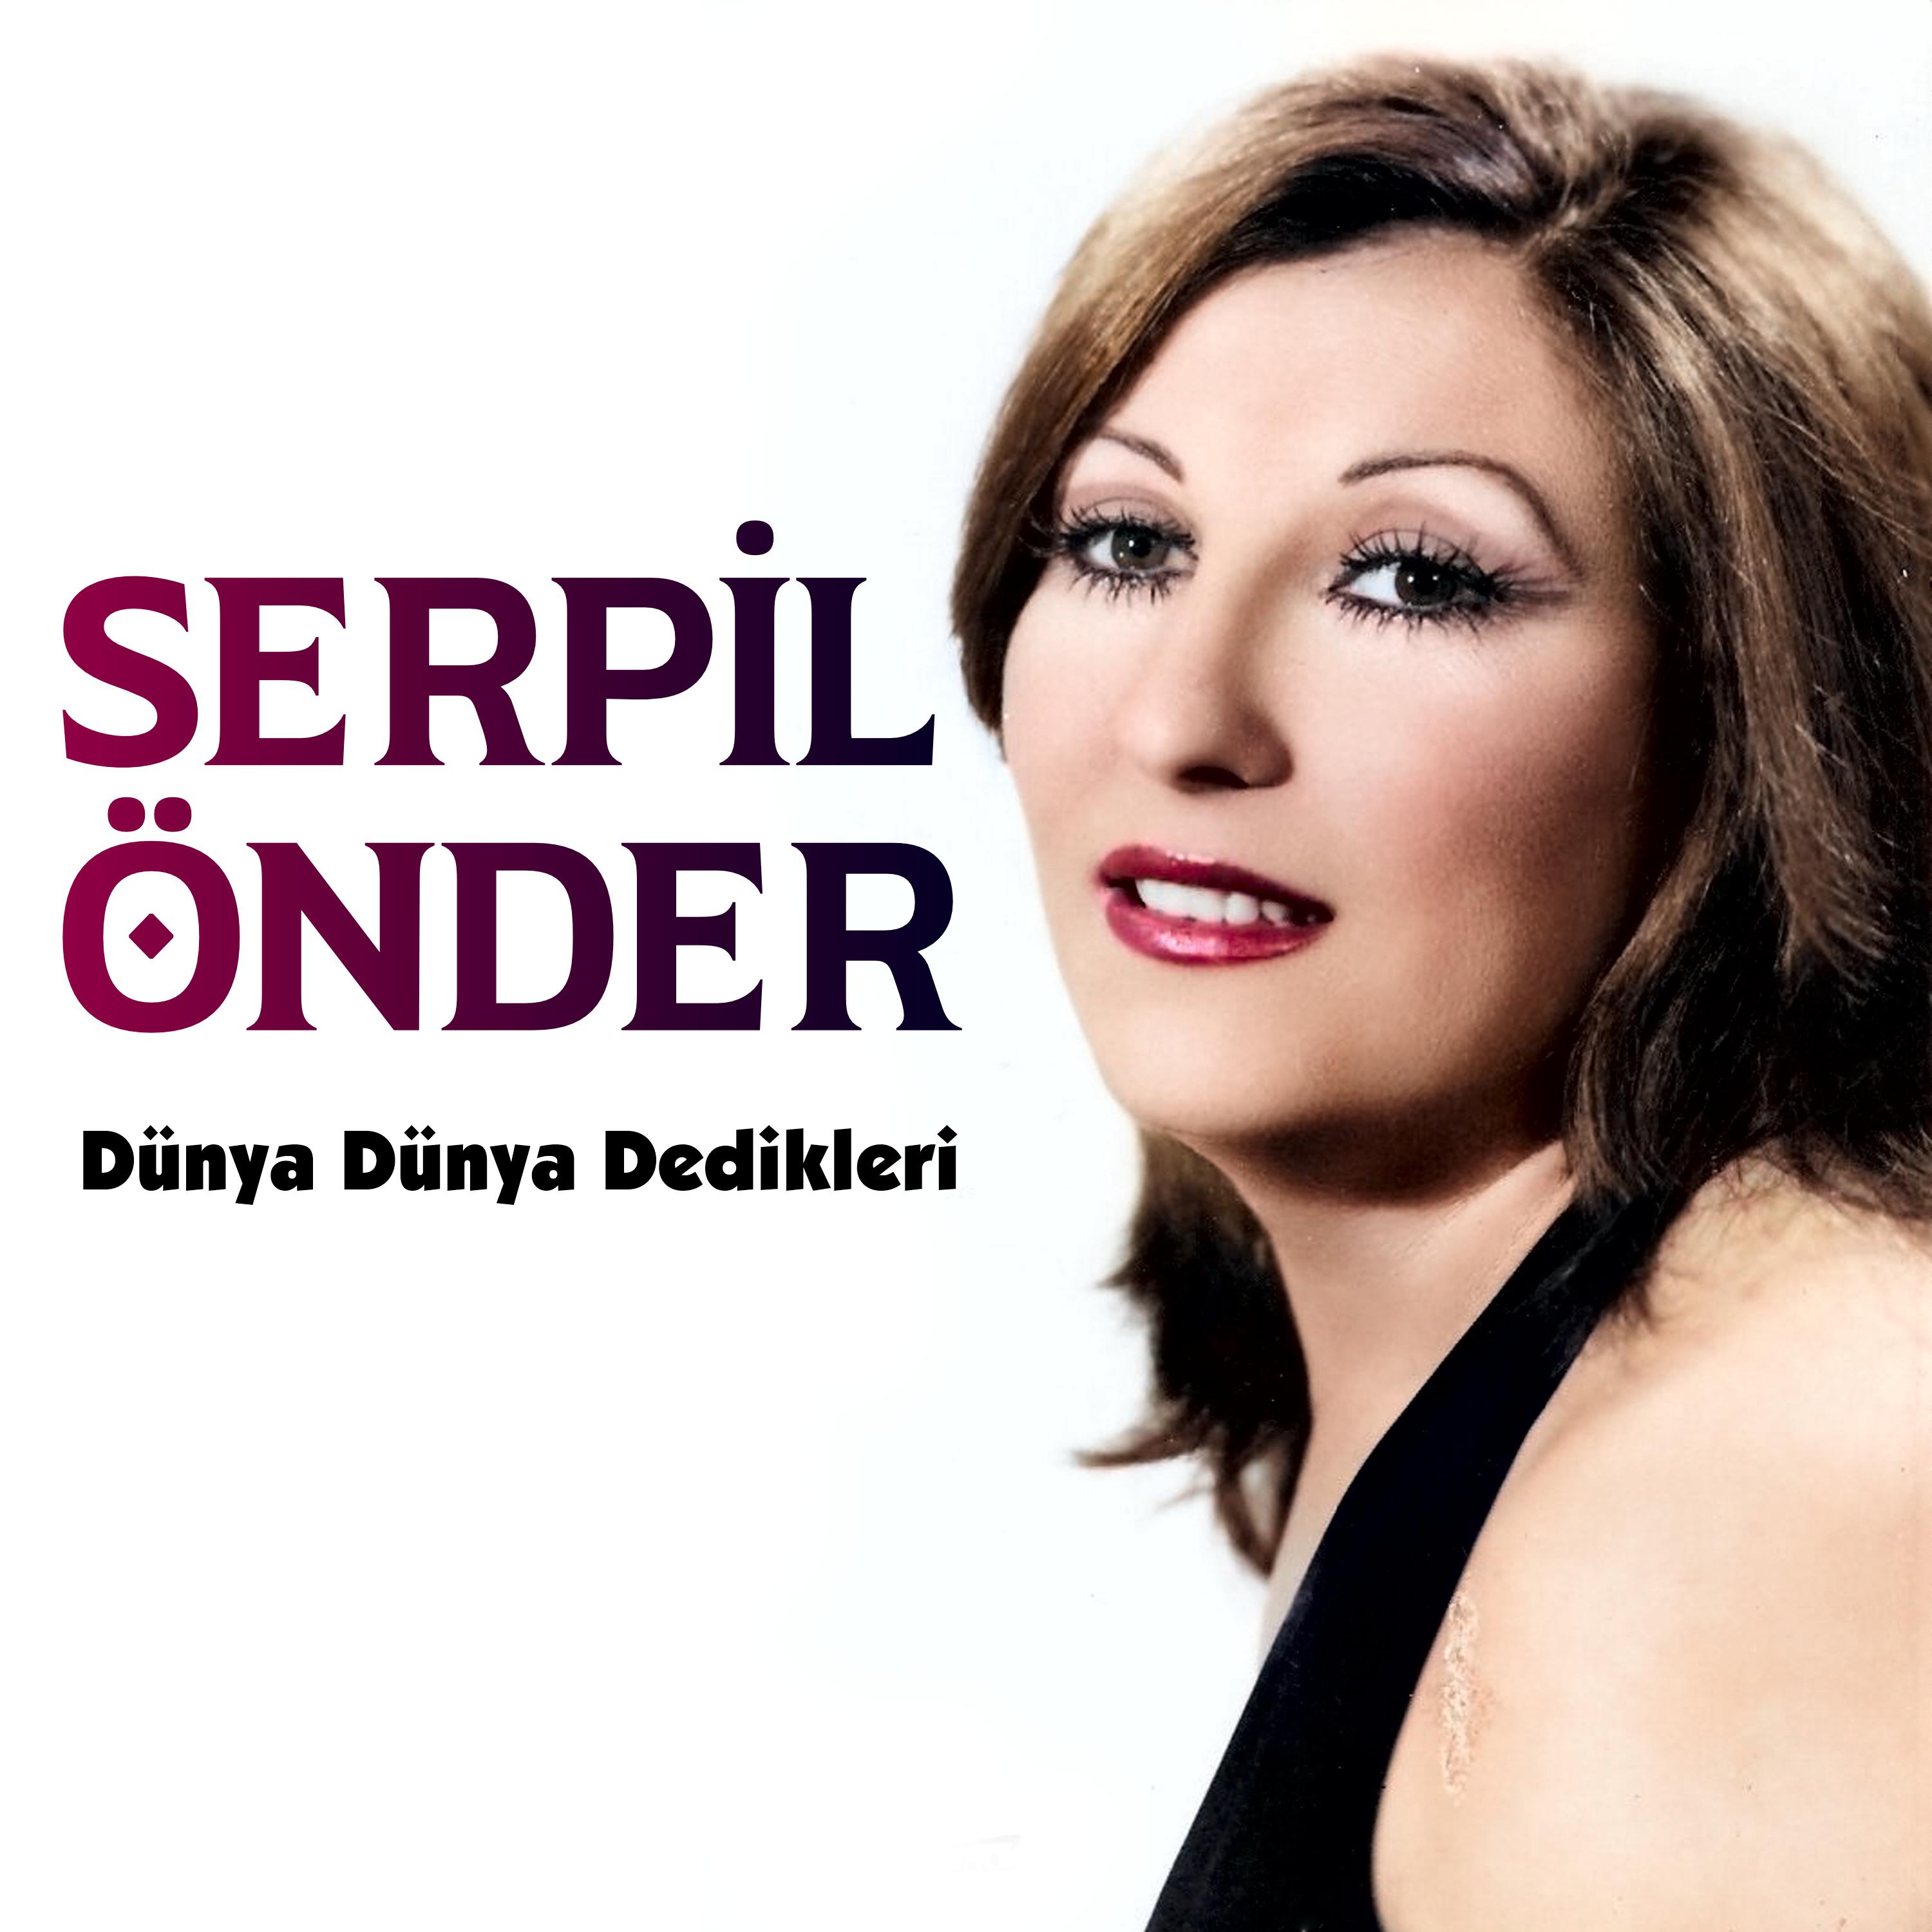 Альбом Dünya Dünya Dedikleri исполнителя Serpil Önder